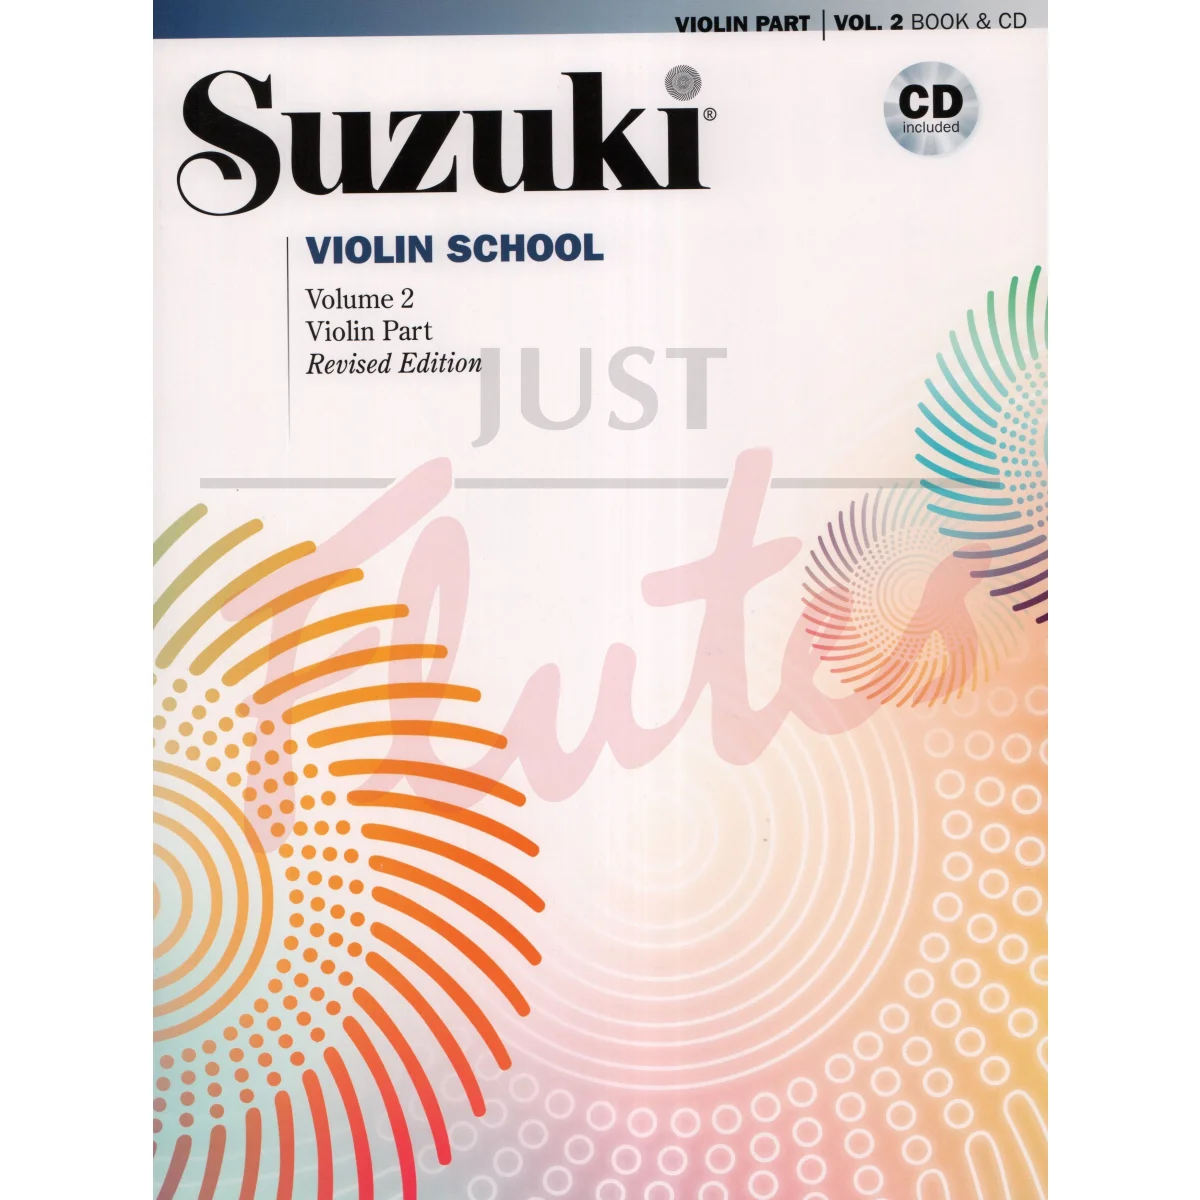 Suzuki Violin School Vol 2 (Revised Edition) [Violin Part]